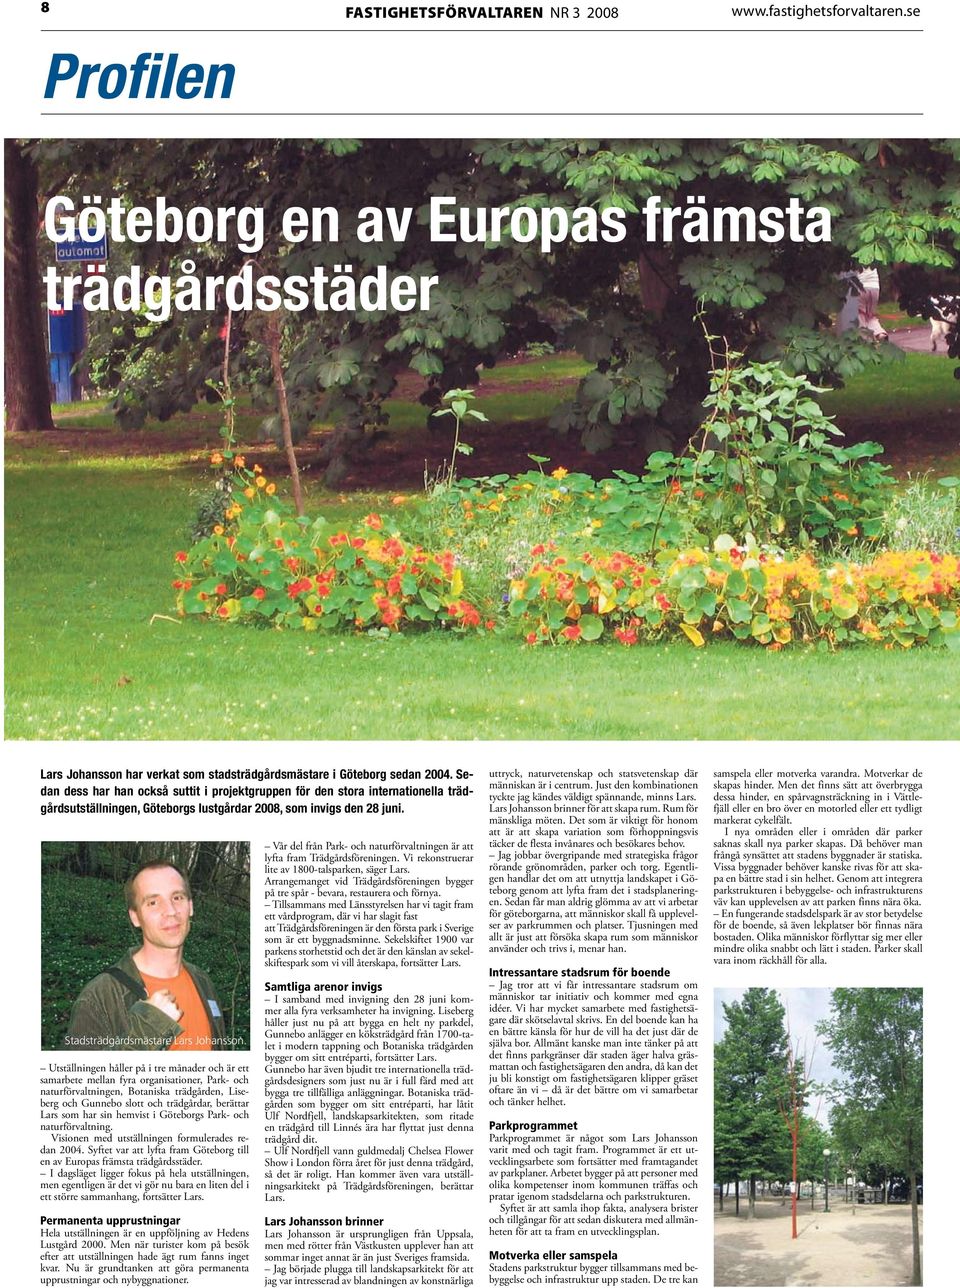 Utställningen håller på i tre månader och är ett samarbete mellan fyra organisationer, Park- och naturförvaltningen, Botaniska trädgården, Liseberg och Gunnebo slott och trädgårdar, berättar Lars som